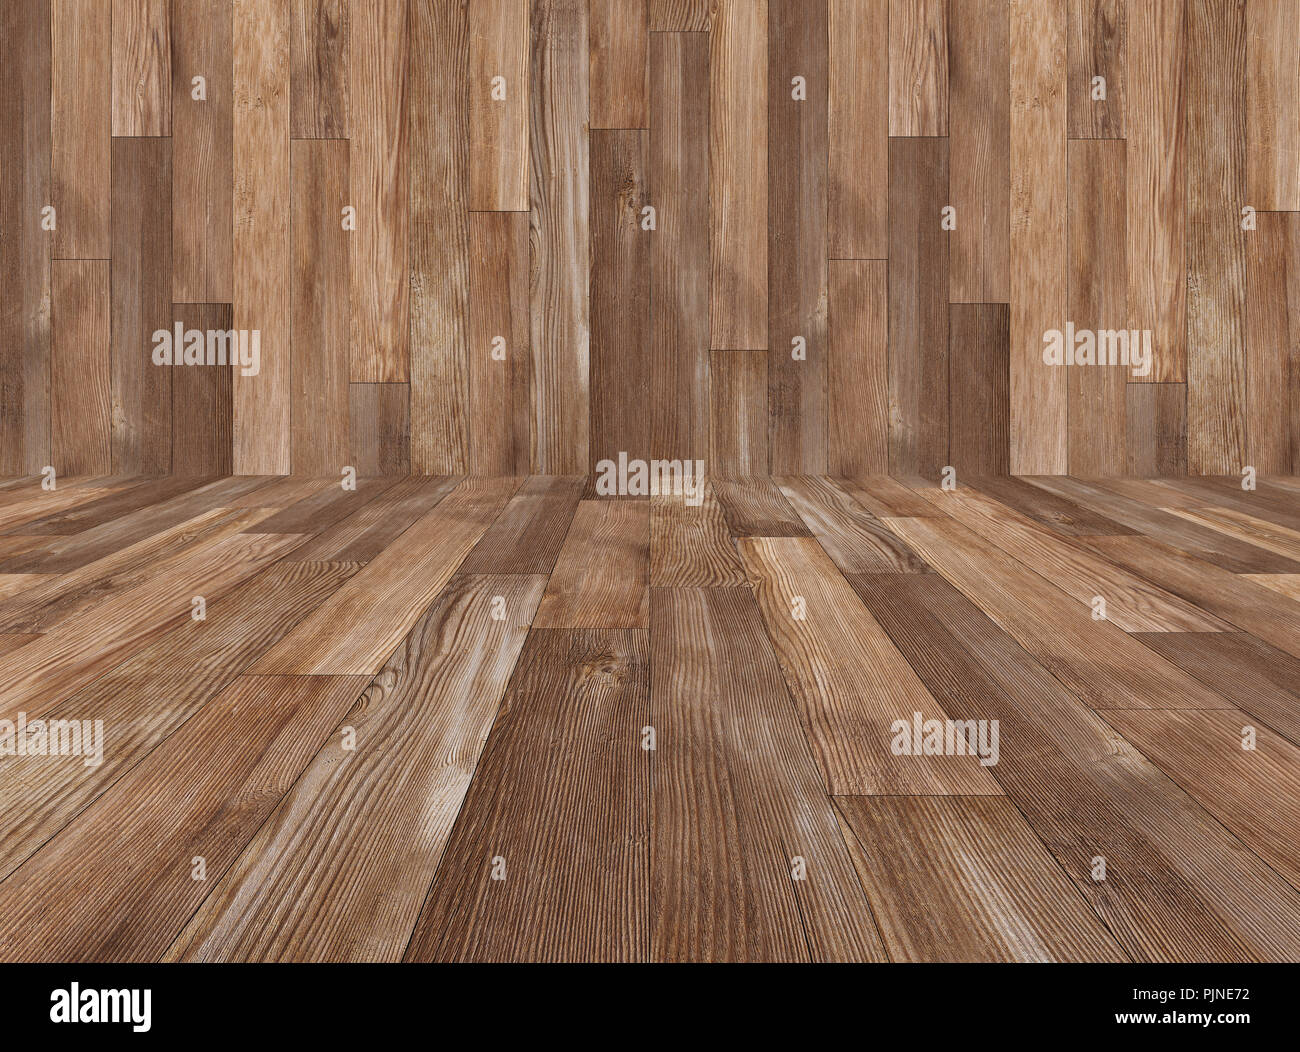 Holz Textur Hintergrund, Holz Paneele für Wand und Boden für Hintergründe Stockfoto